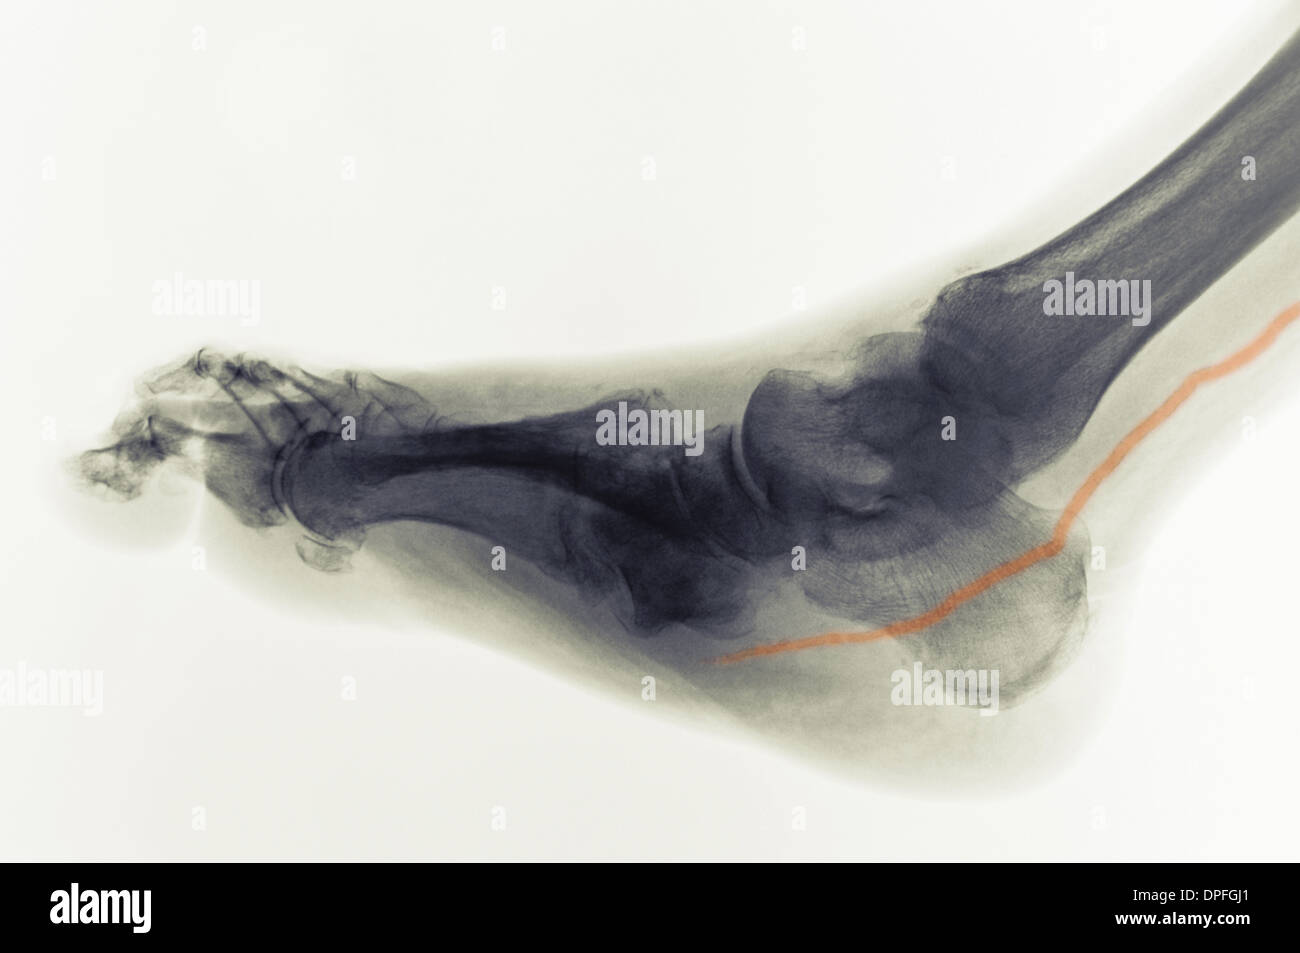 Radiografía del pie del diabético mostrando arteria calcificada Foto de stock